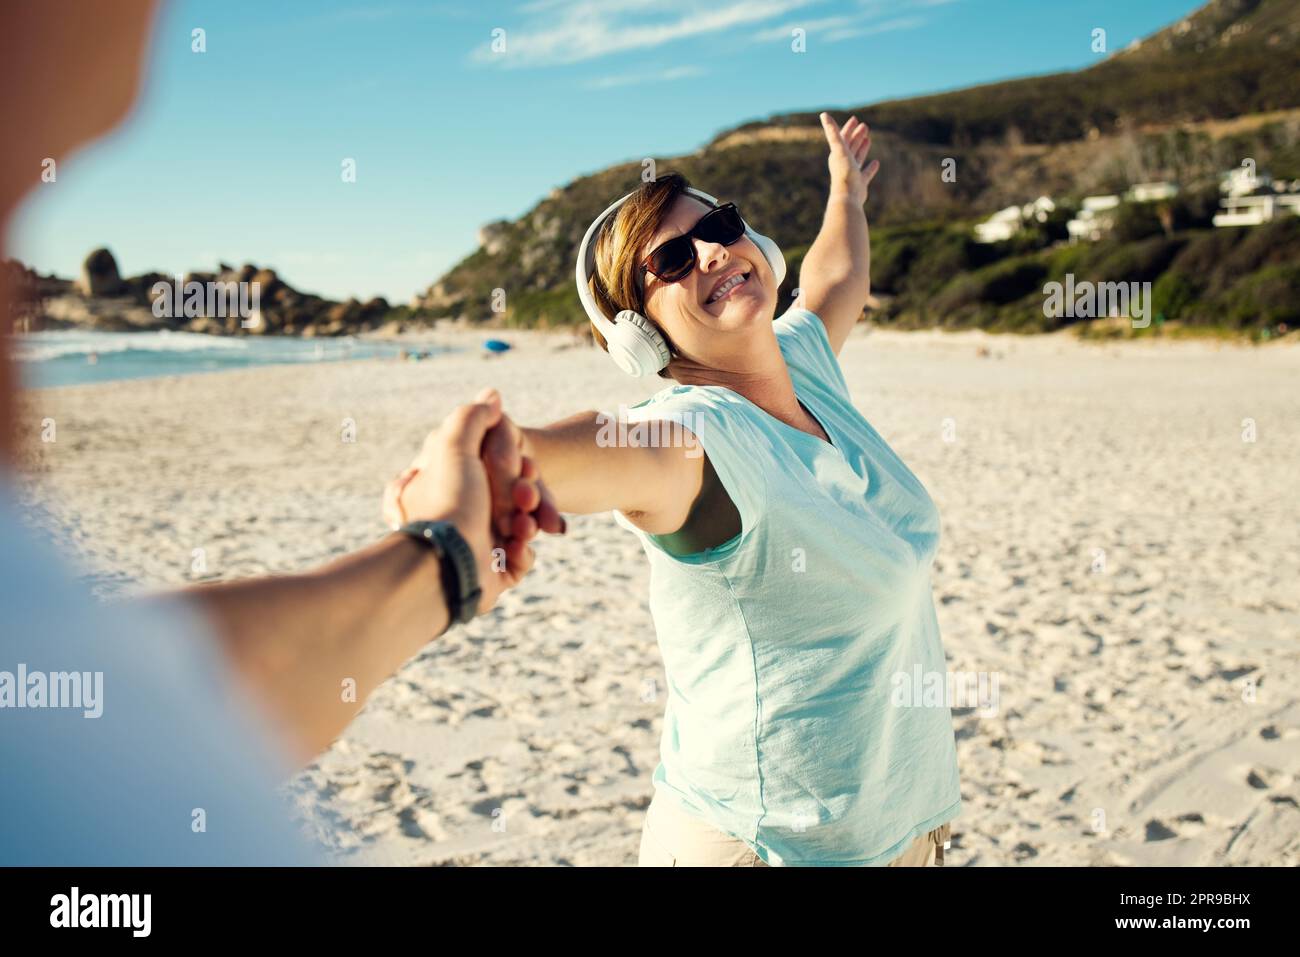 Jetzt ist die Zeit, um Ihr bestes Leben zu leben. Eine Frau, die Kopfhörer trägt und sich am Strand amüsiert. Stockfoto